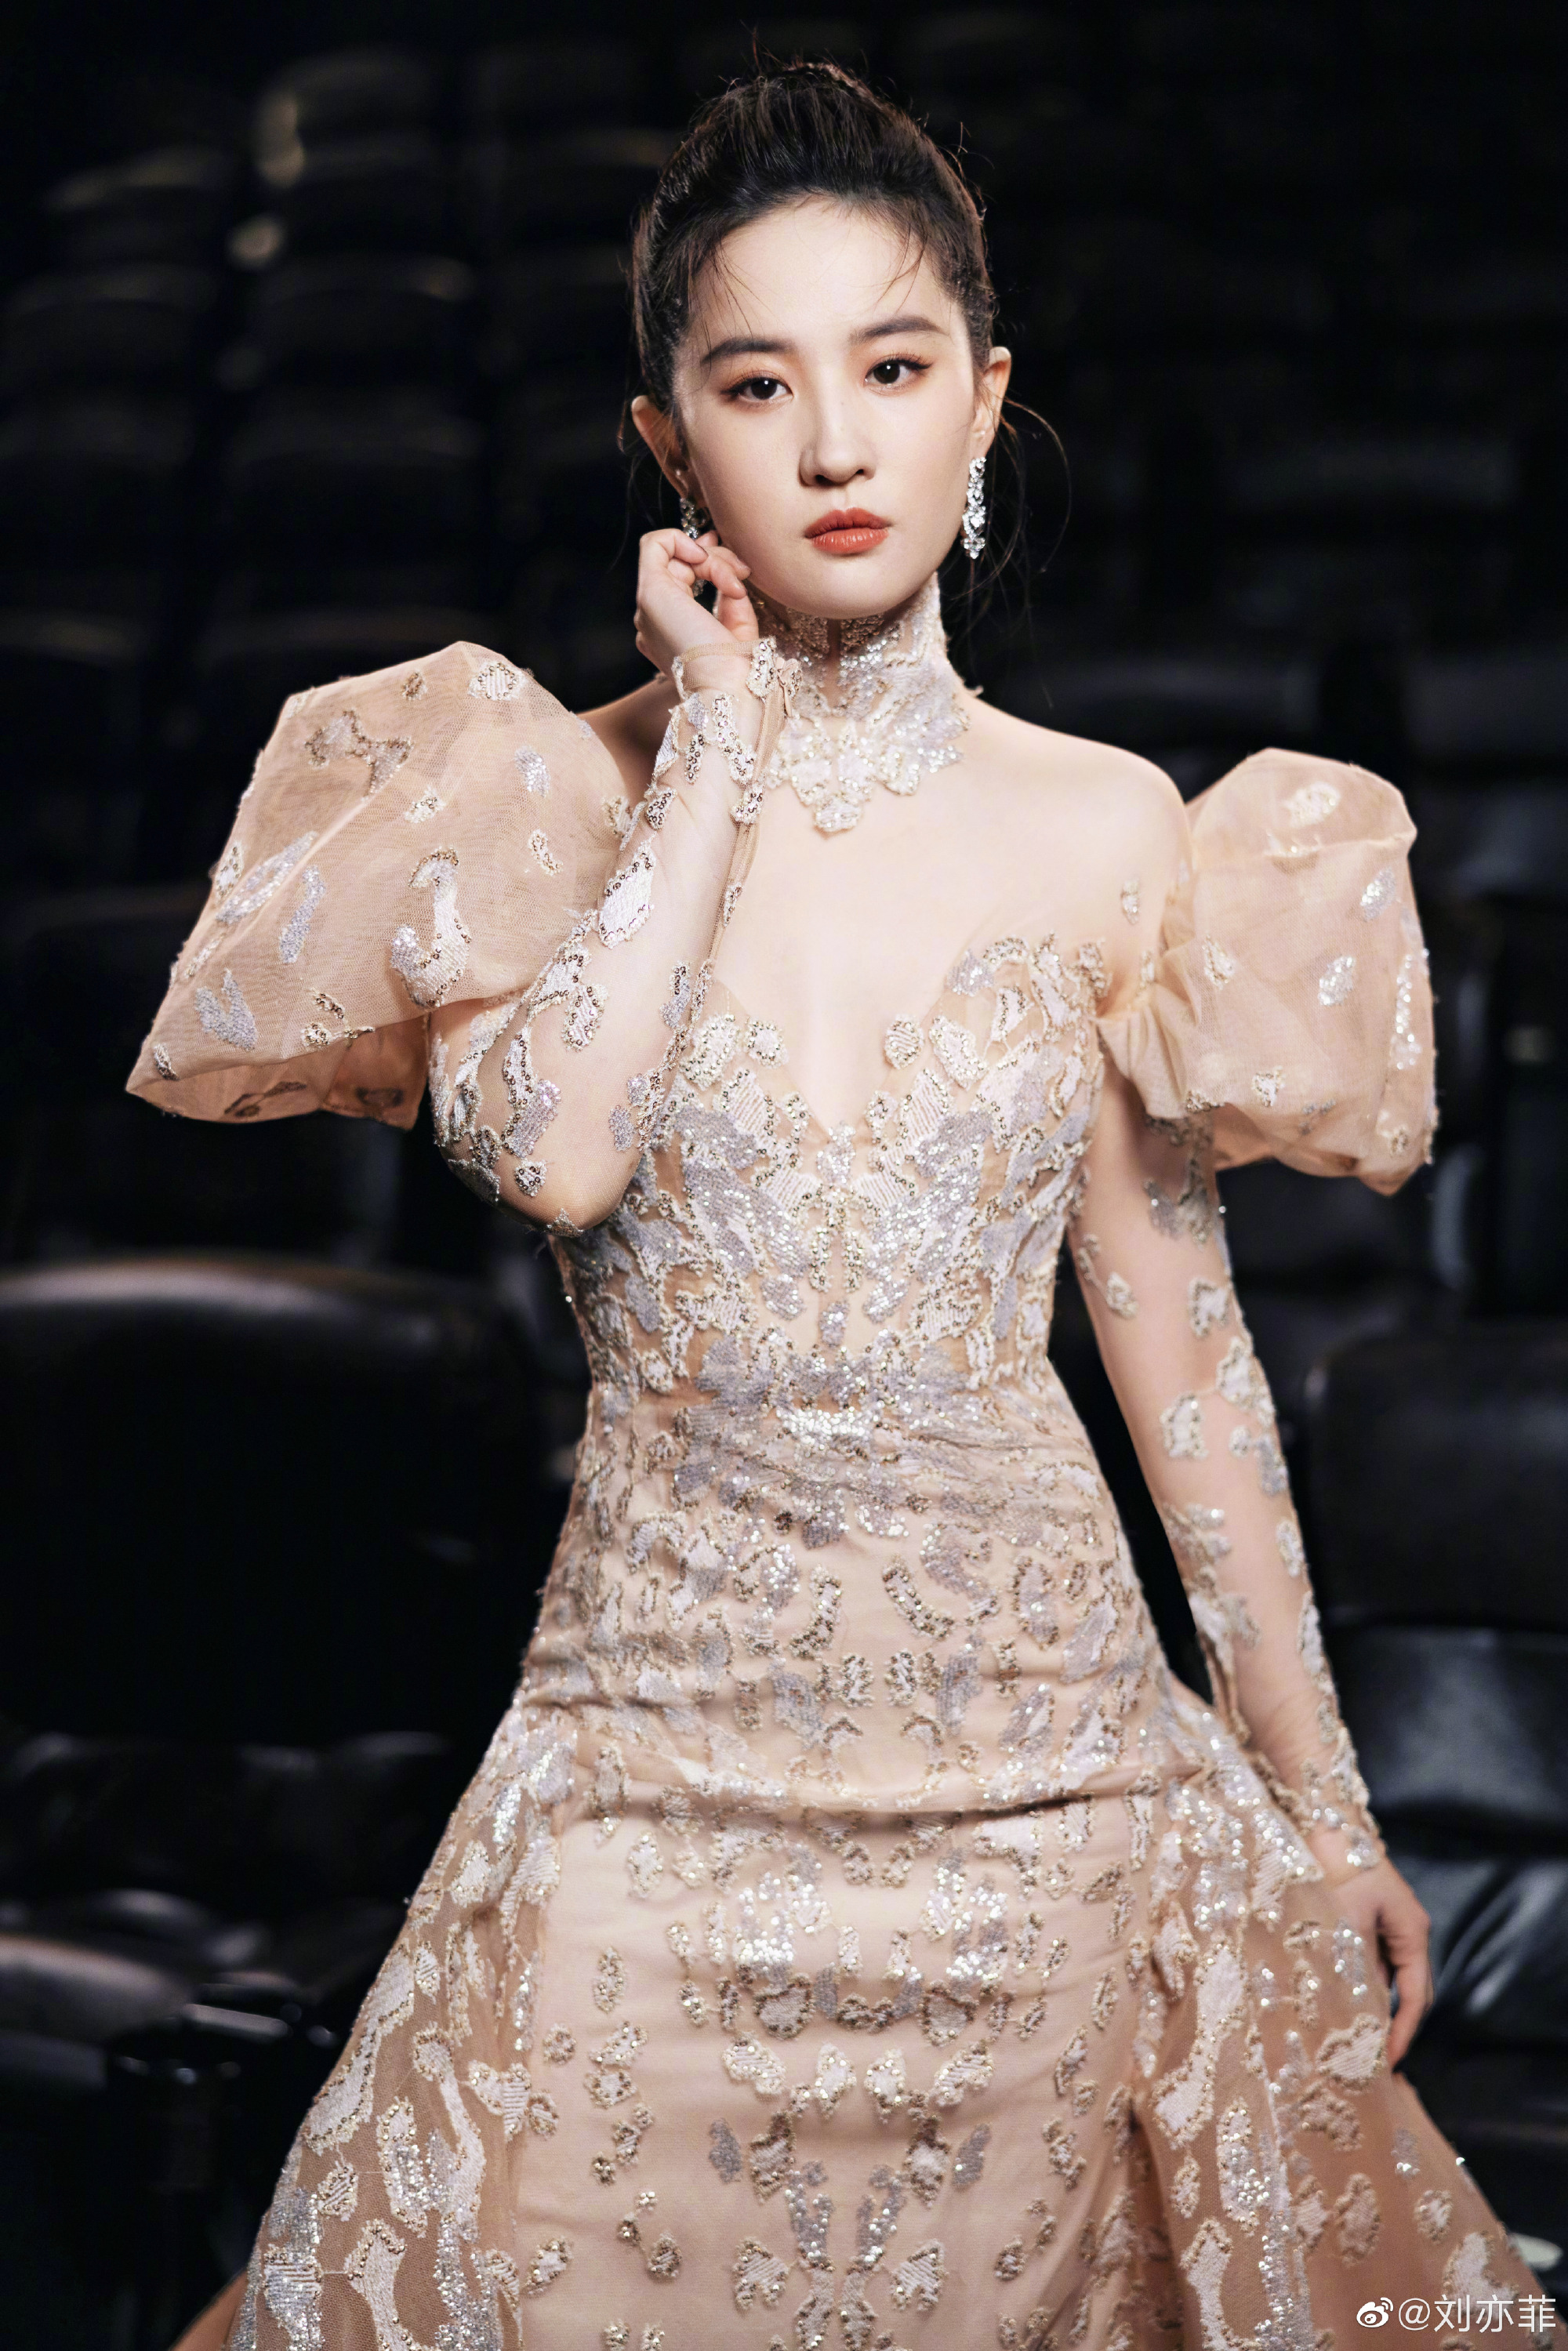 Hãy xem hình ảnh của Lưu Diệc Phi, một trong những nữ diễn viên hàng đầu của Trung Quốc. Với nhan sắc quyến rũ và tài năng diễn xuất, cô đang là ngôi sao được yêu thích và theo dõi nhất hiện nay.